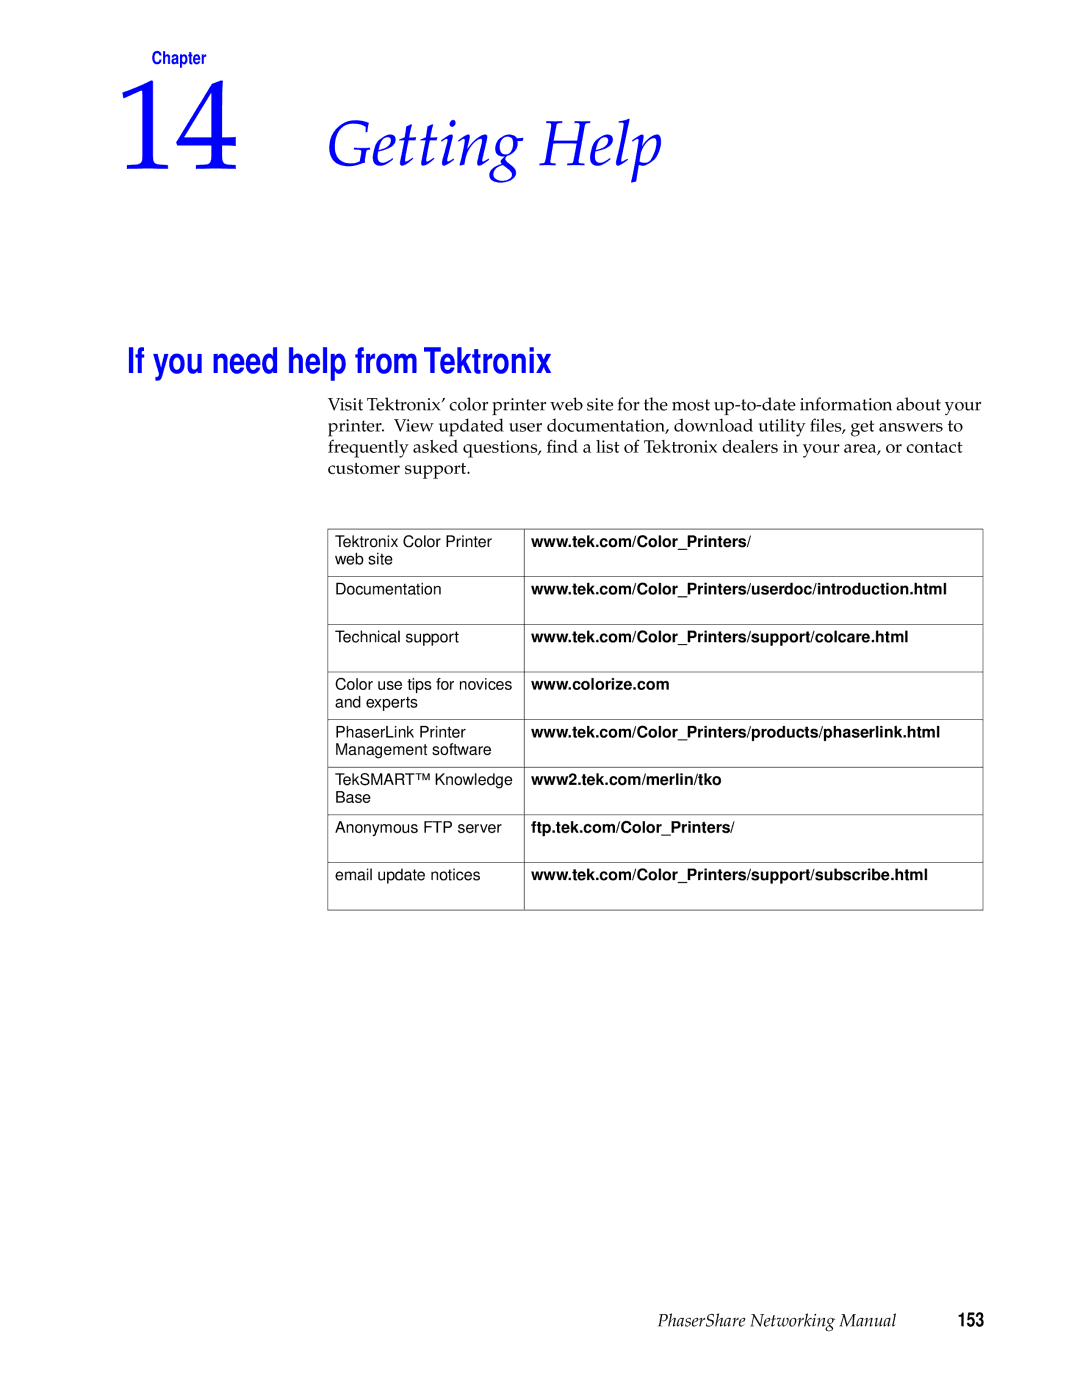 Xerox 360, 780, 840 manual Getting Help, If you need help from Tektronix, 153 